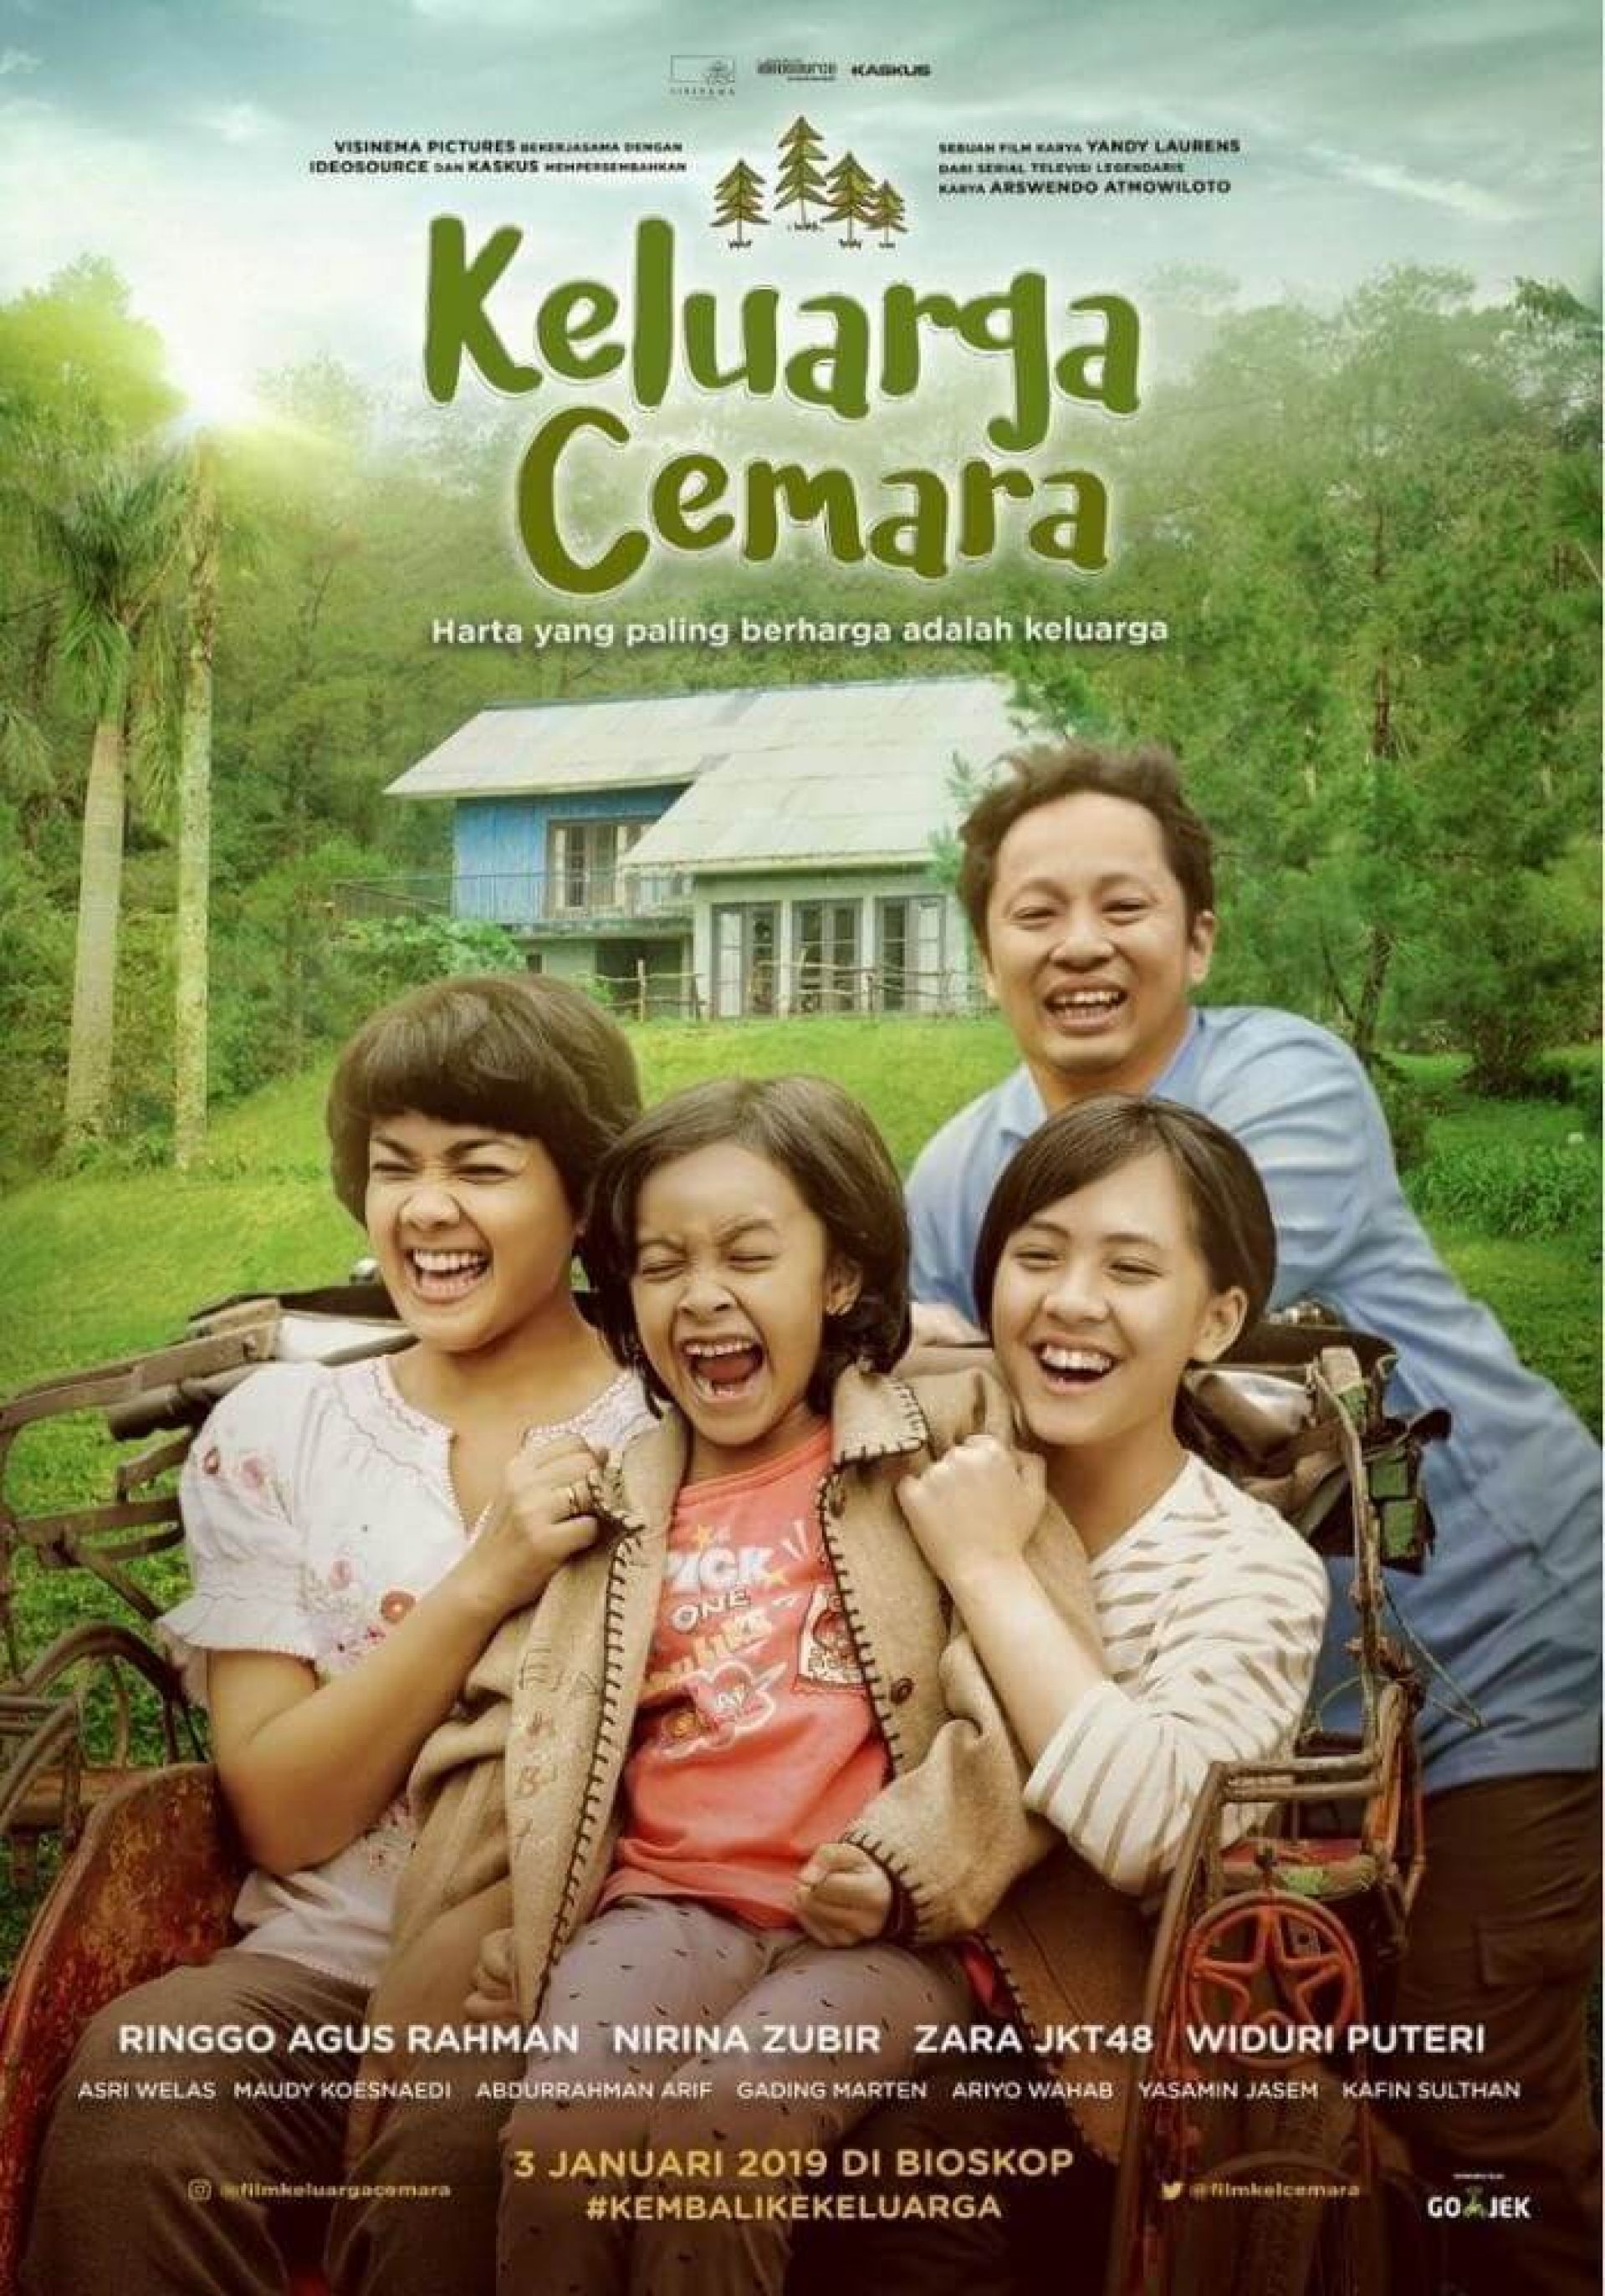 Rekomendasi Film Indonesia Terbaik Yang Wajib Kamu Tonton Yupi 8730